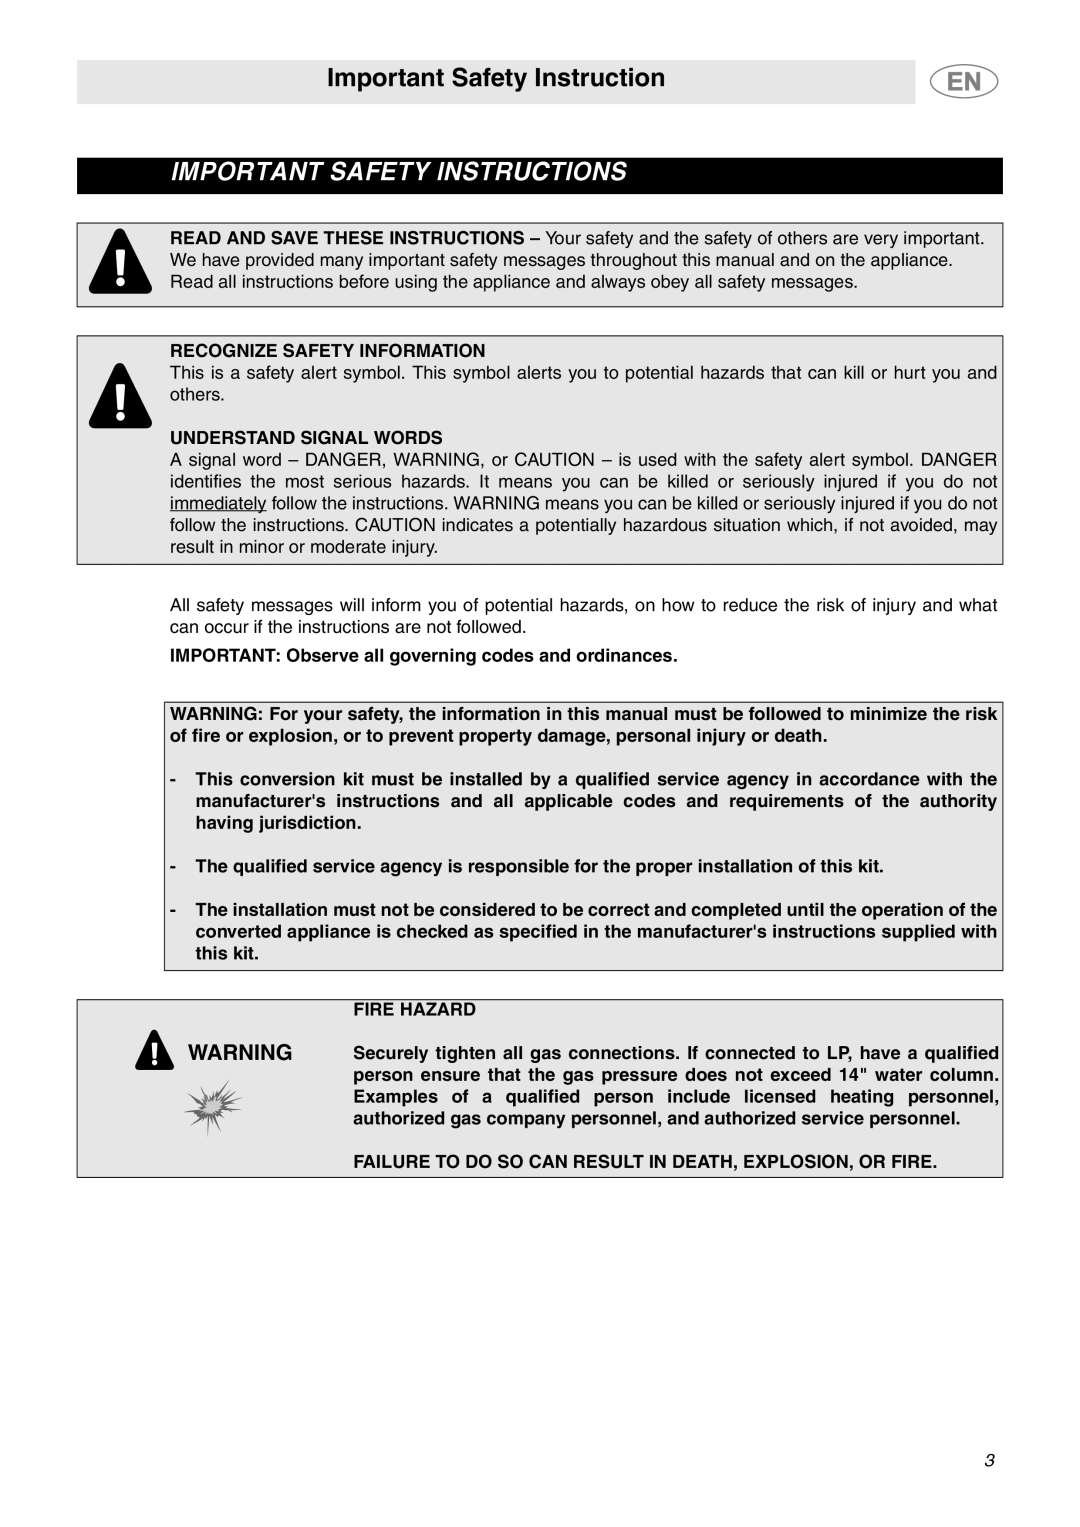 Smeg PTS605BU3 important safety instructions Important Safety Instruction, Recognize Safety Information, Fire Hazard 